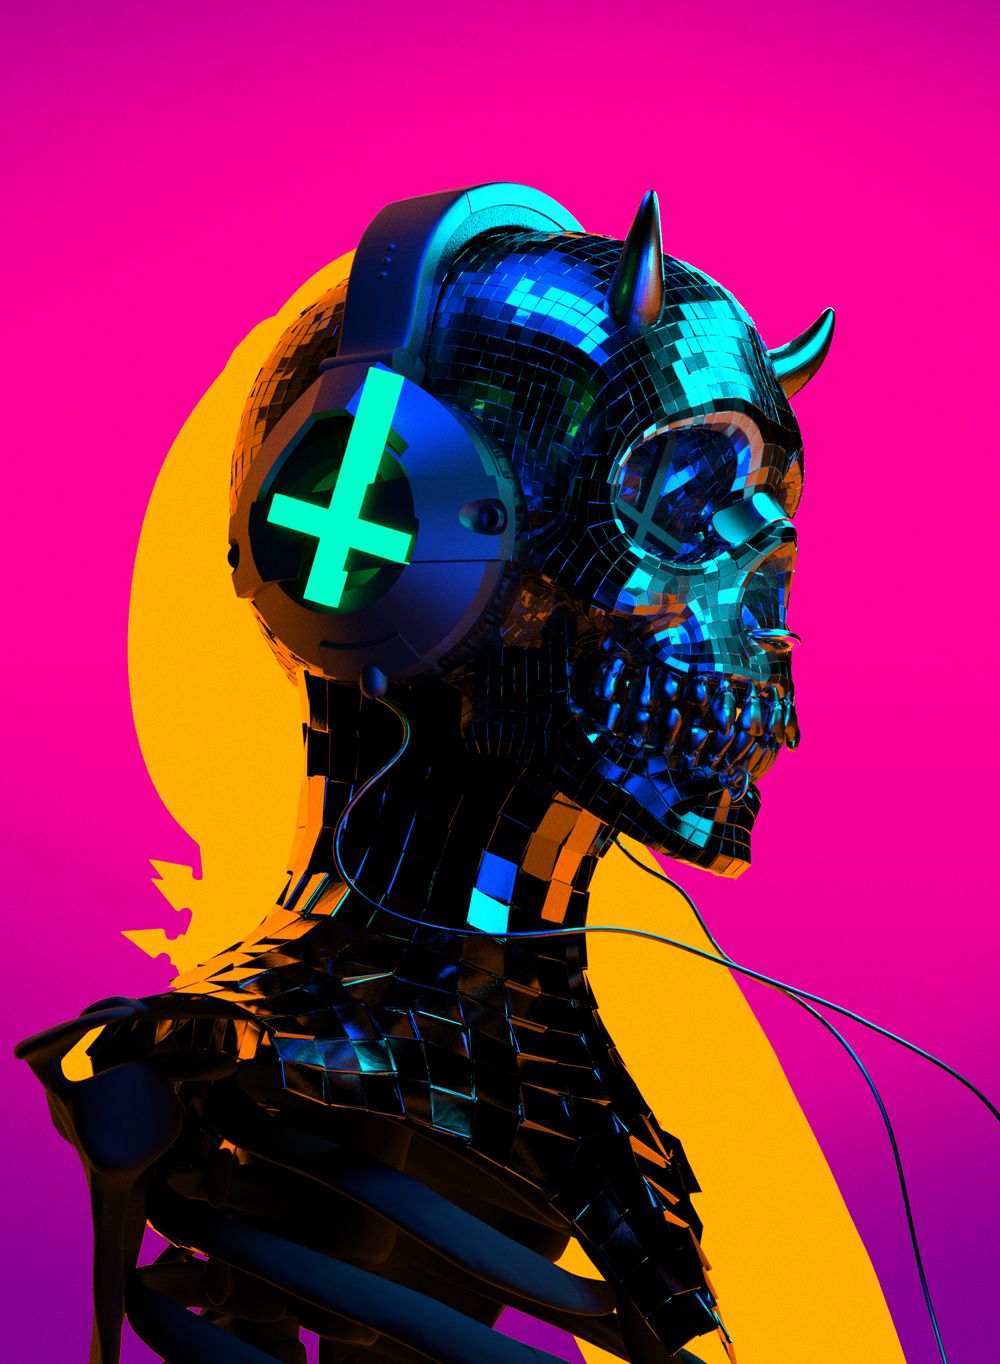 Auʇıɔɥɹısʇ. Cyberpunk art, Art inspiration, Psychedelic art